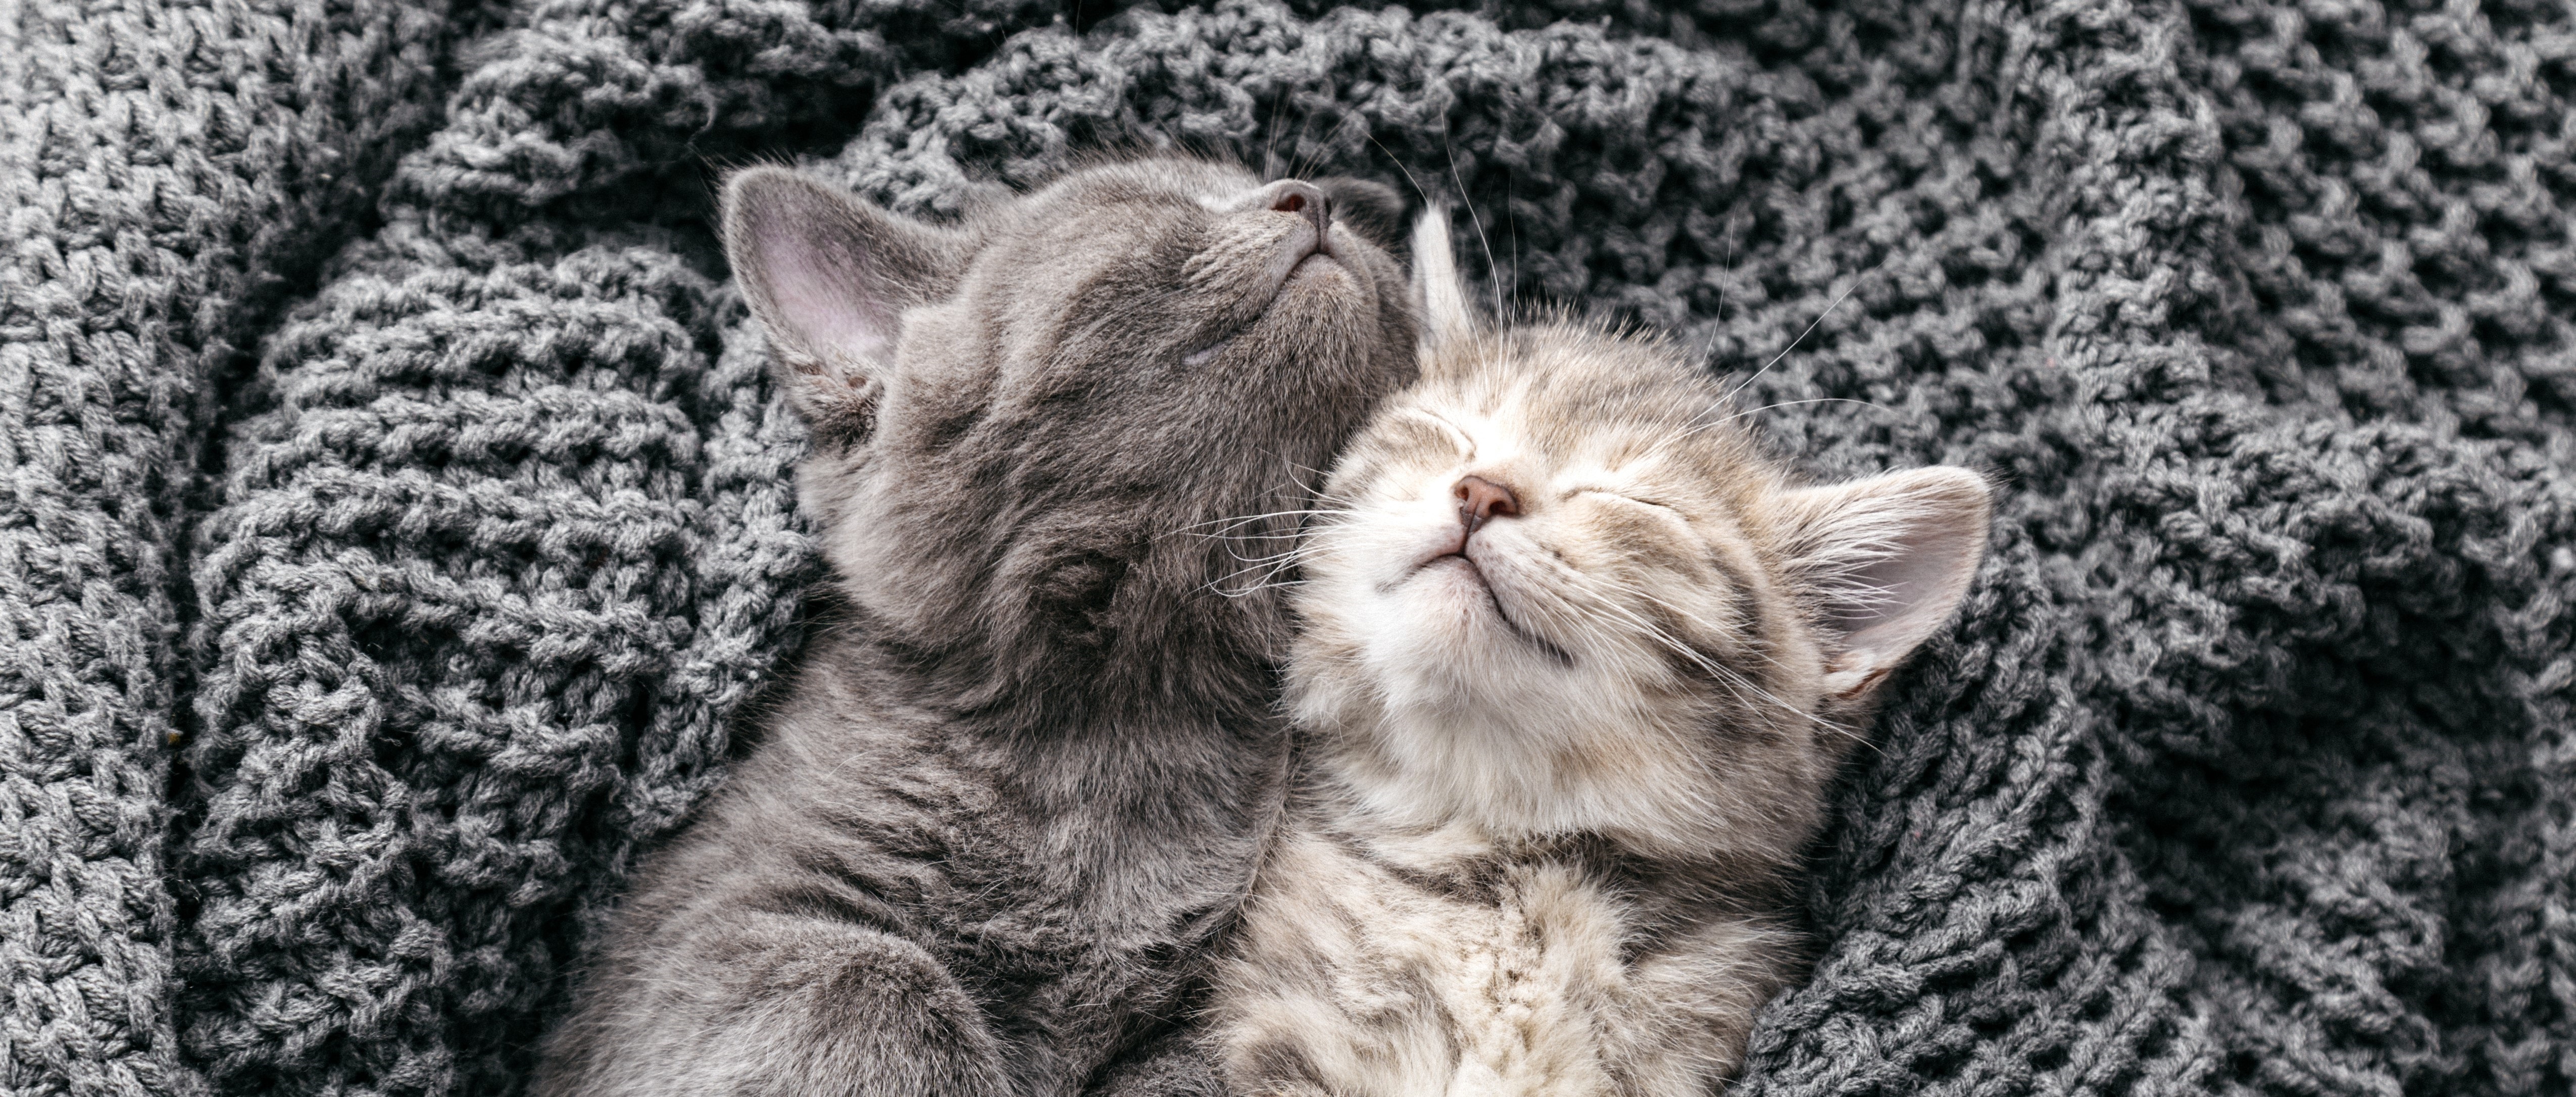 Kittens sleeping